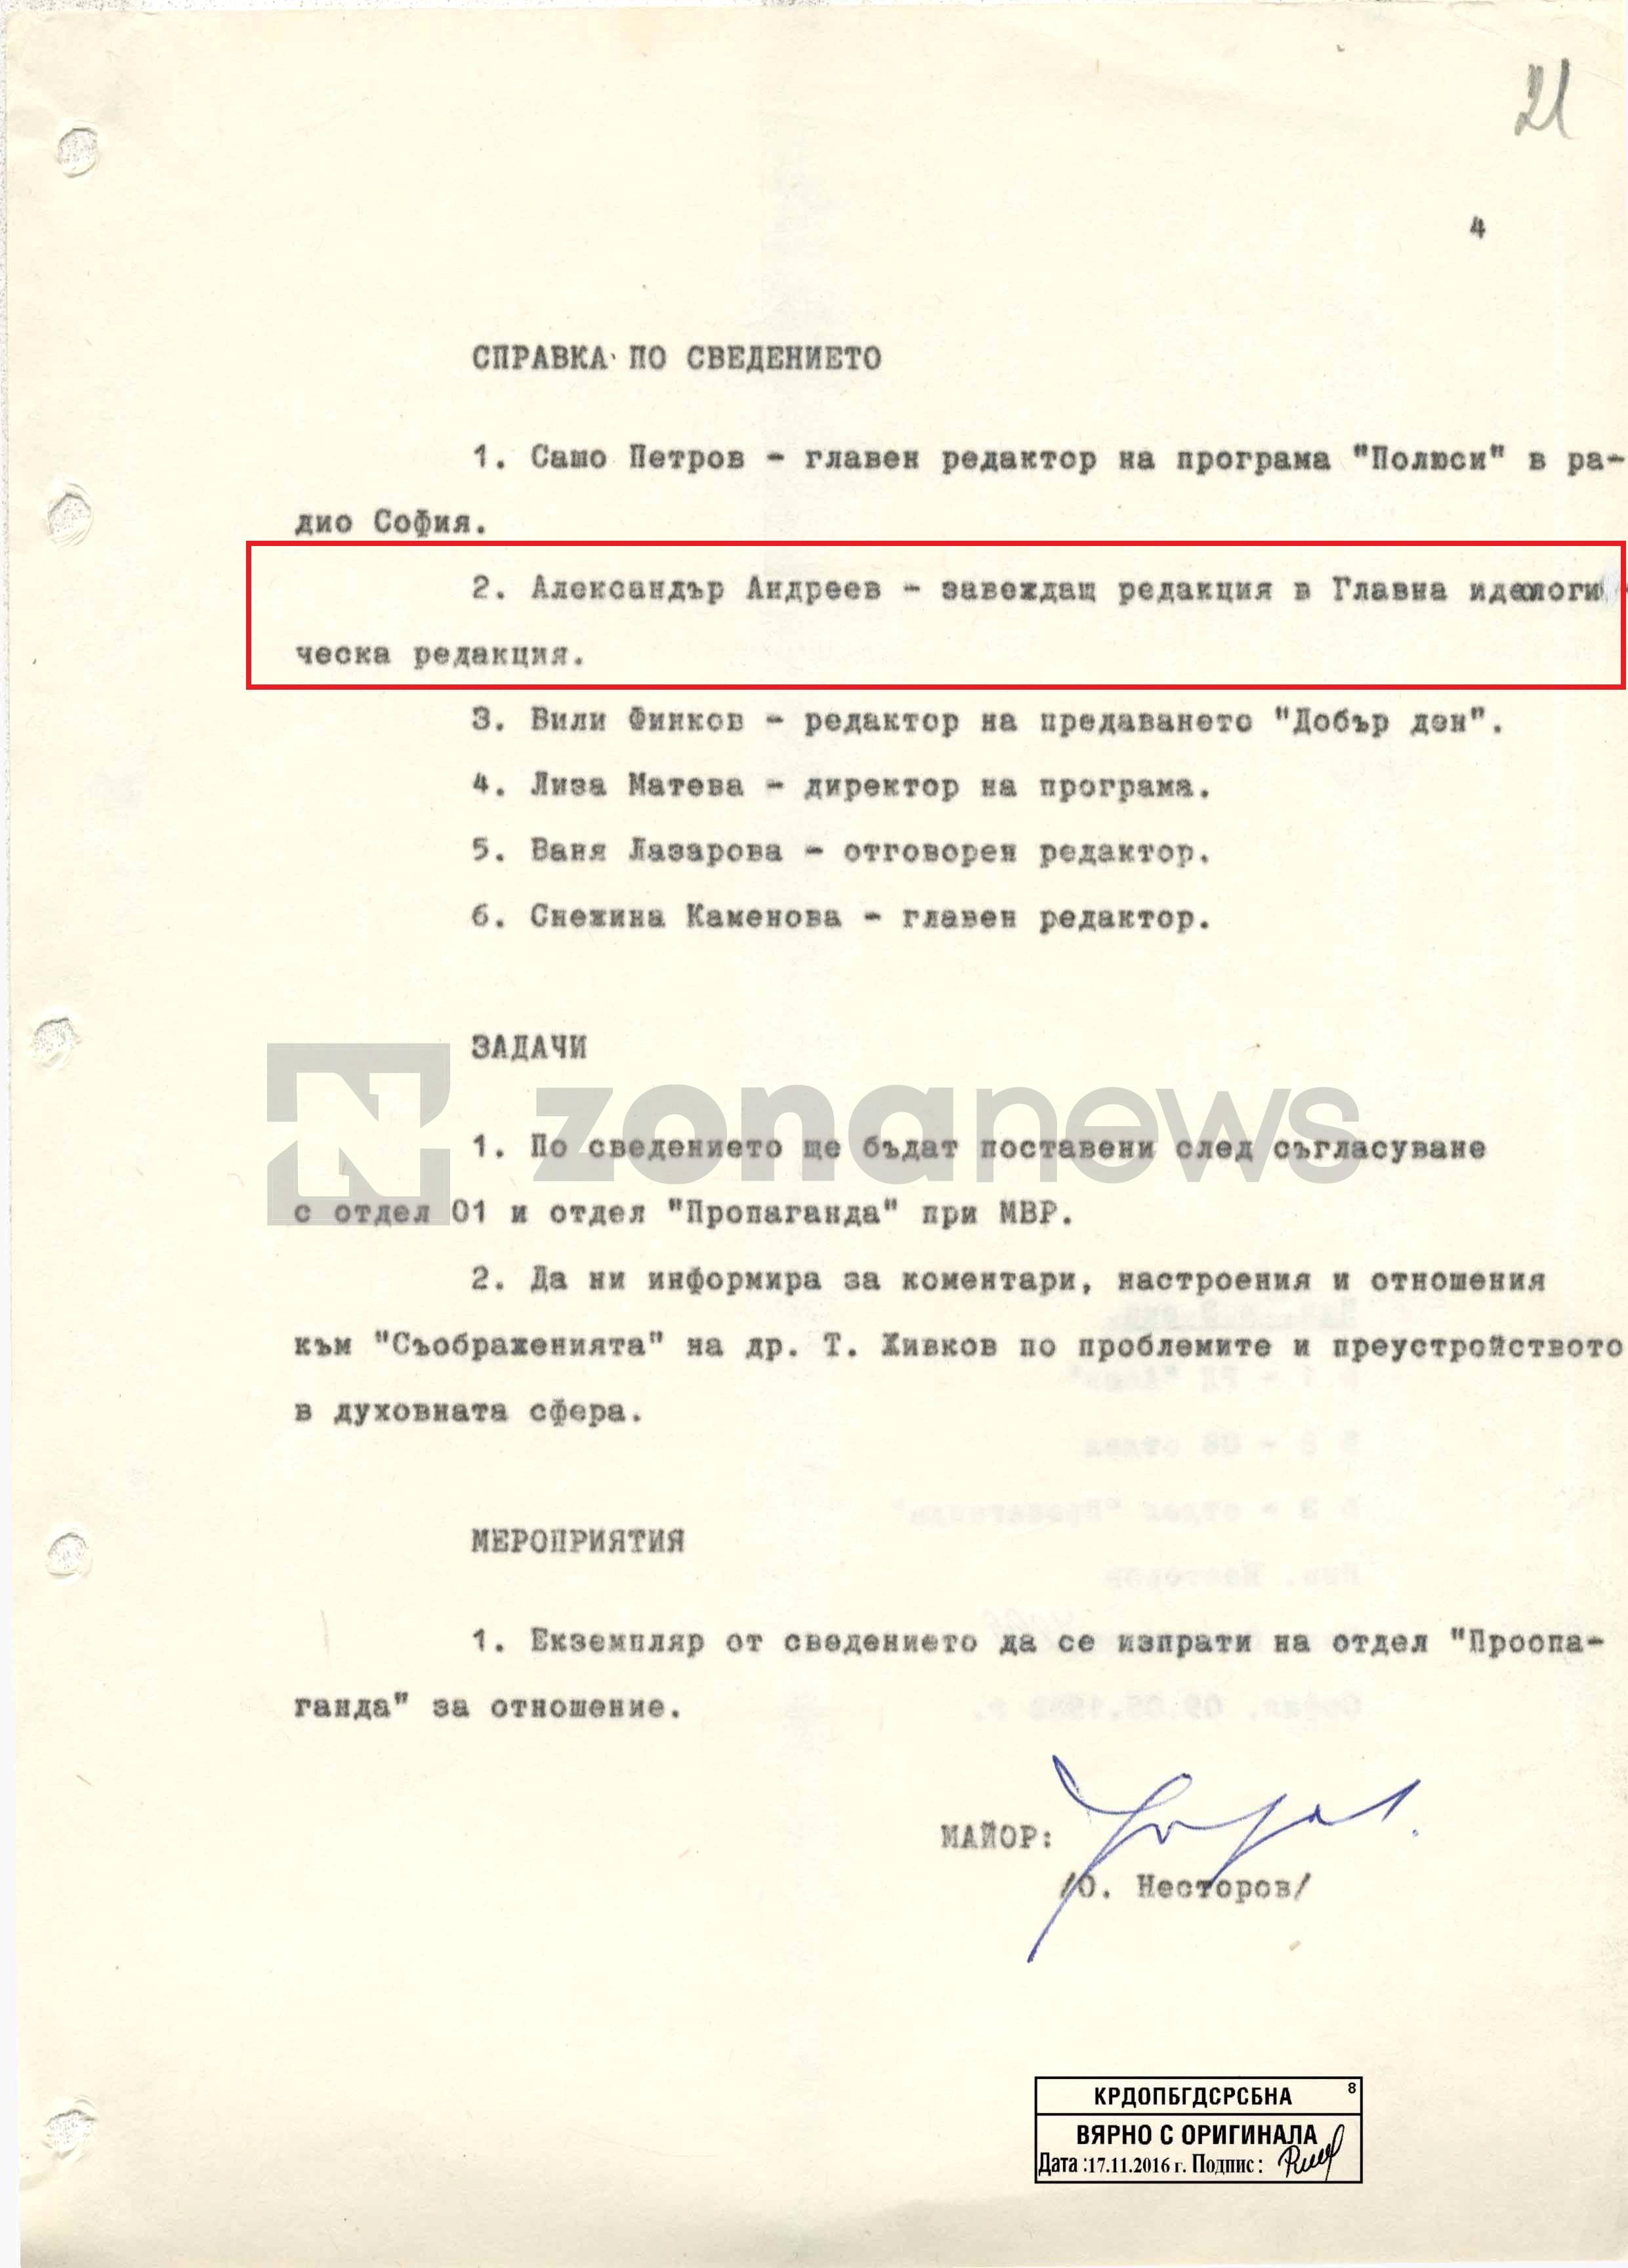 Александър Андреев като завеждащ редакция в Главна идеологическа редакция на радио София през 1988 г. 